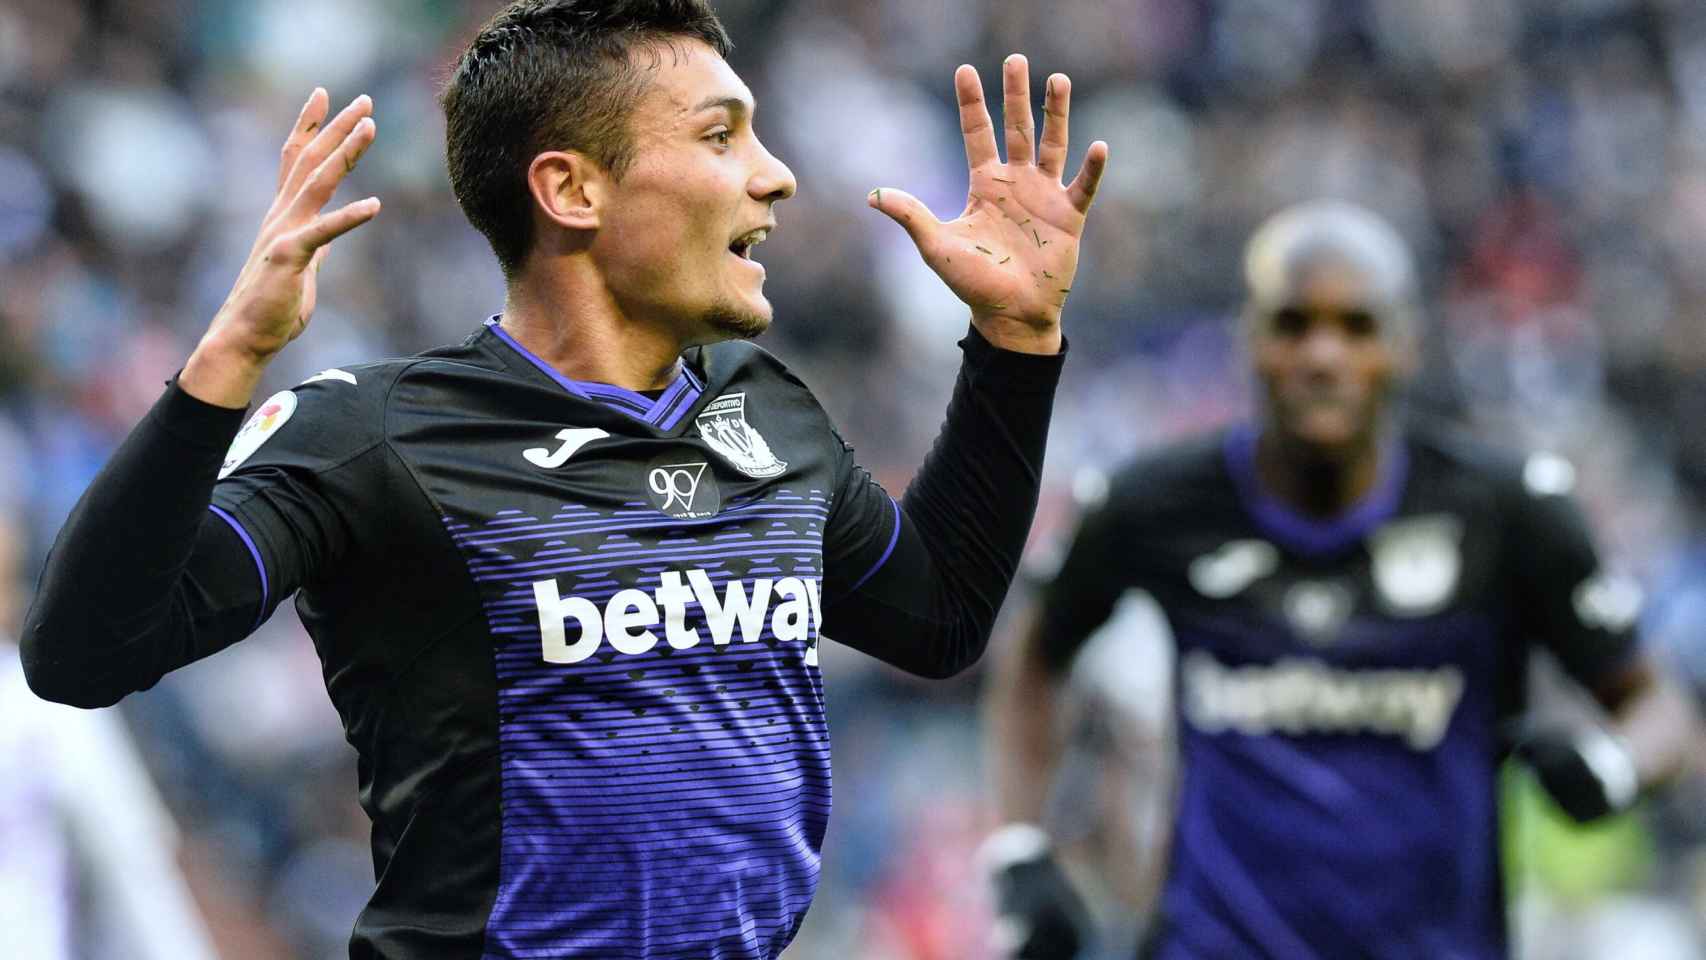 Óscar celebrando su gol al Valladolid